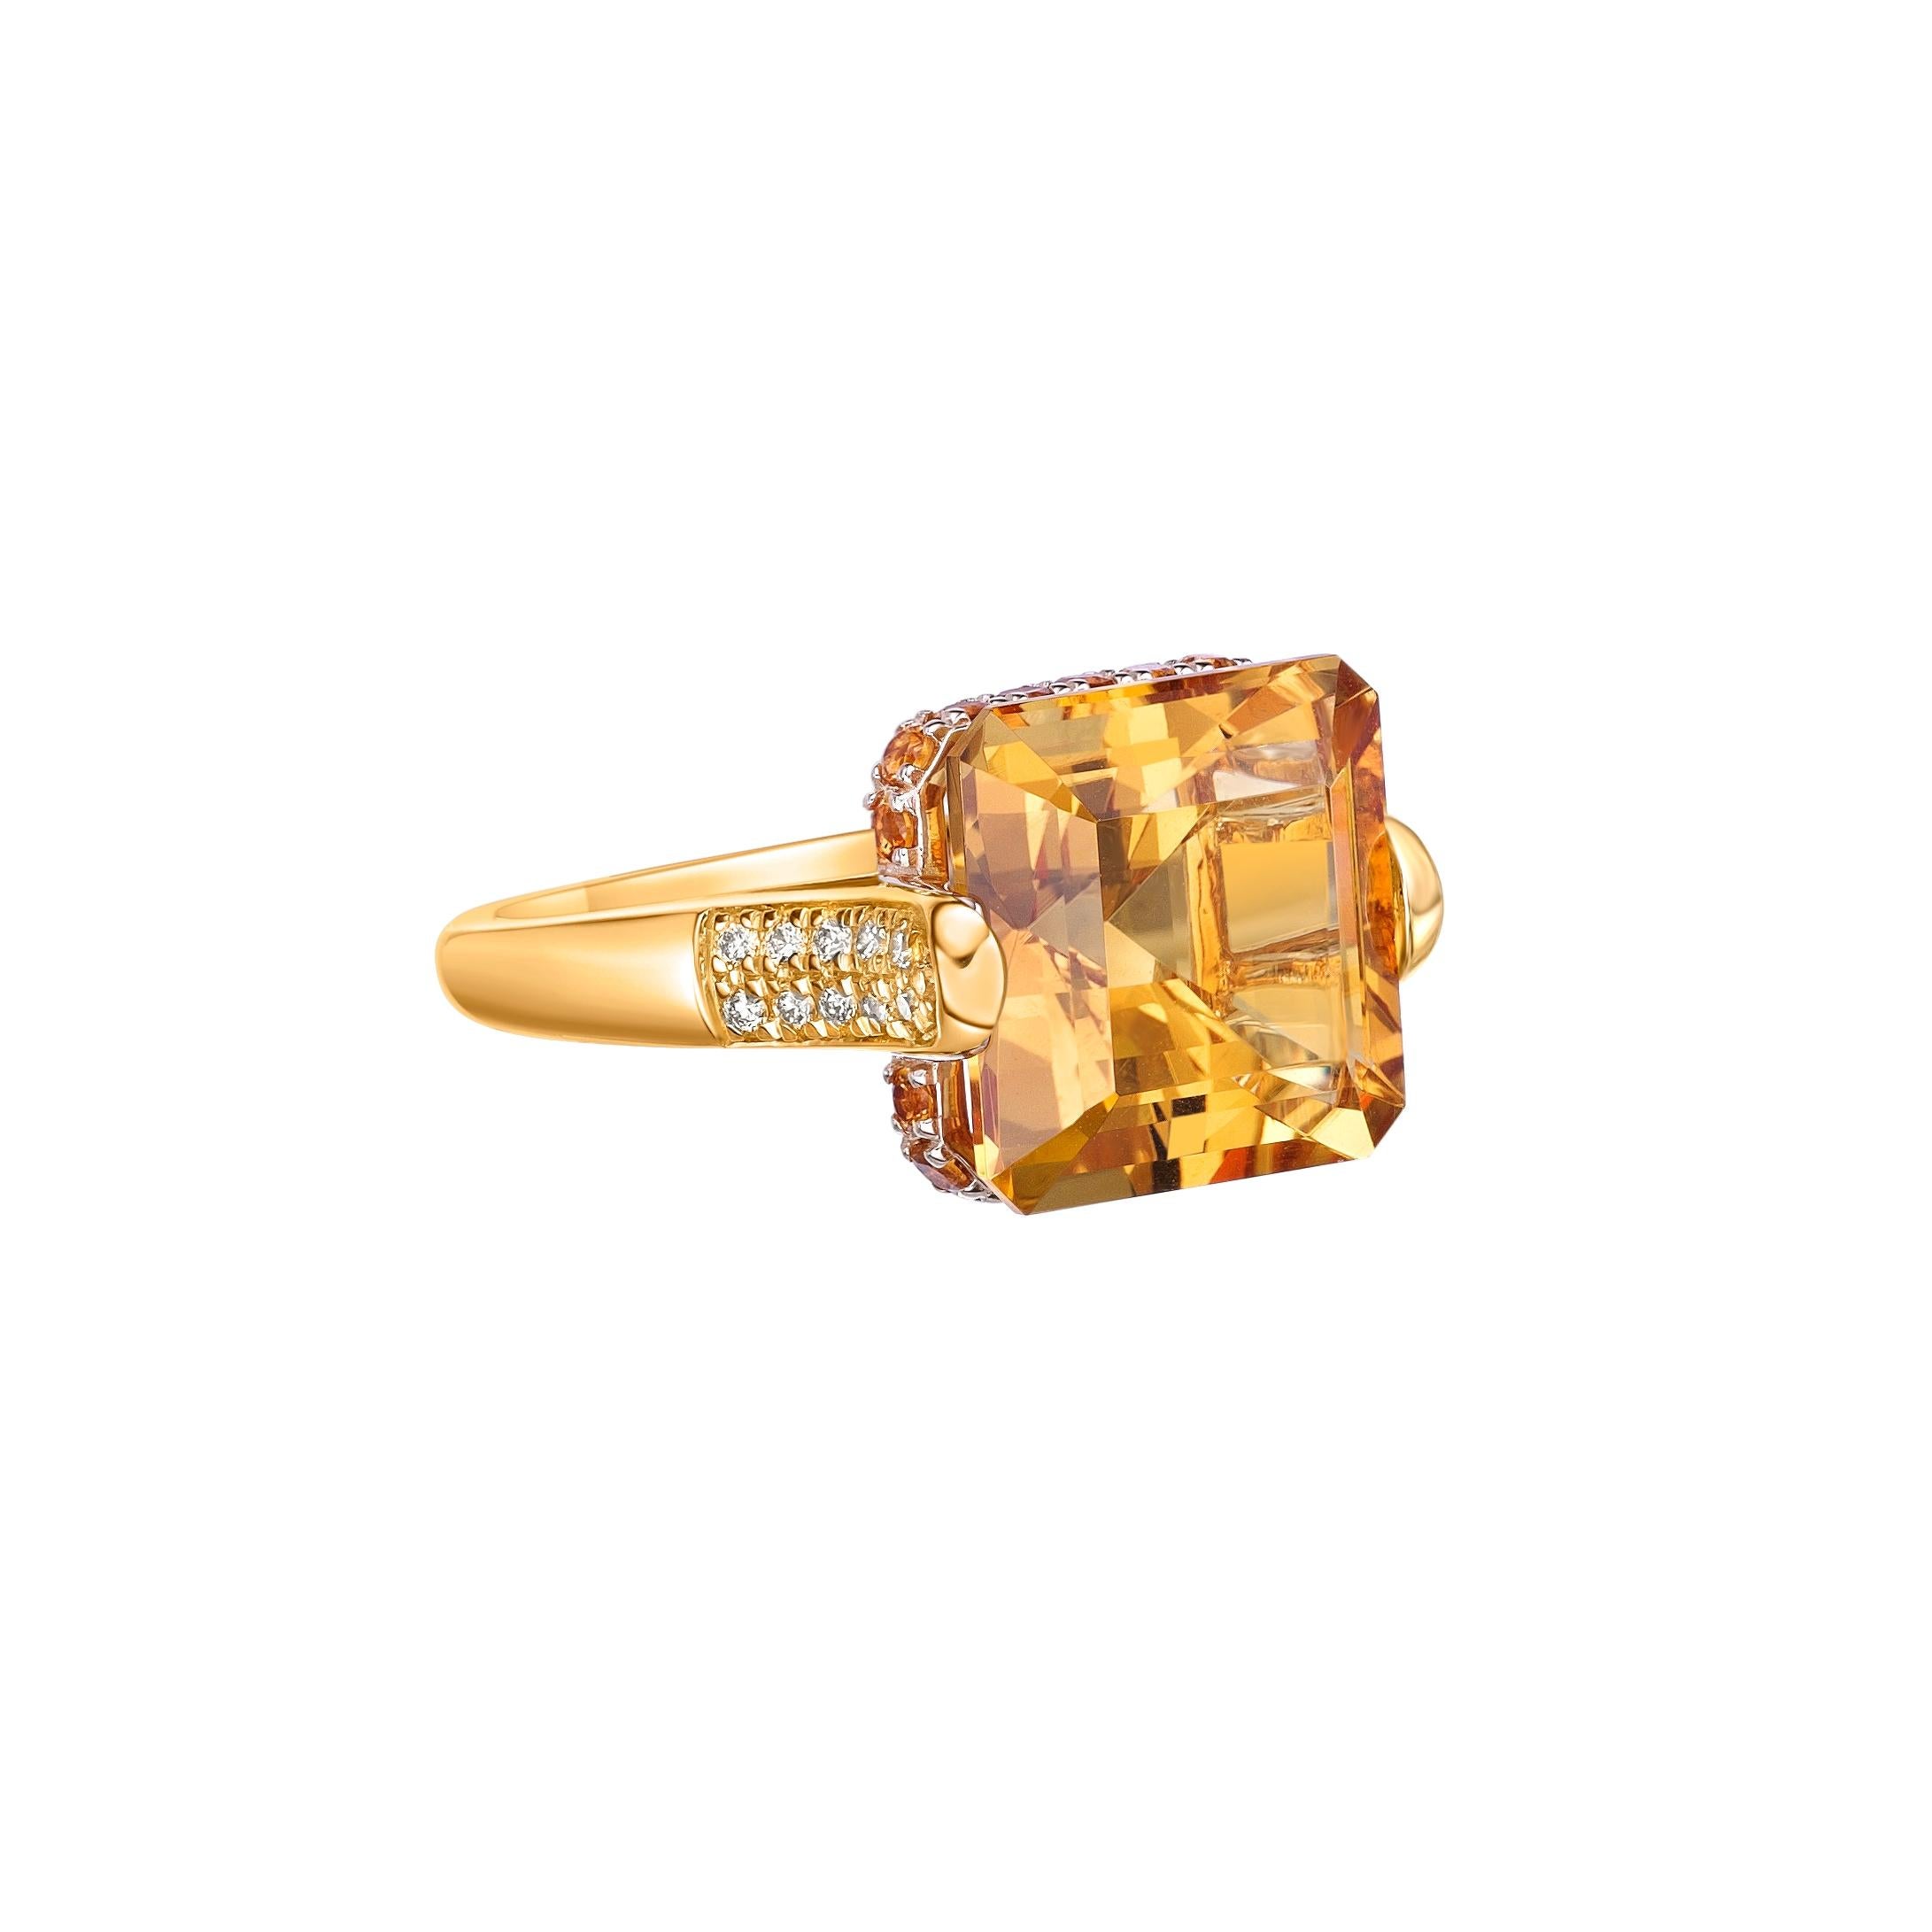 Dies ist fancy Citrin Ring in Octagon Form lila Farbton. Der Ring ist elegant und kann zu vielen Anlässen getragen werden. Der Citrin rund um den Ring trägt zur Schönheit und Eleganz des Rings bei.

Citrin Fancy Ring aus 18 Karat Gelbgold mit weißem